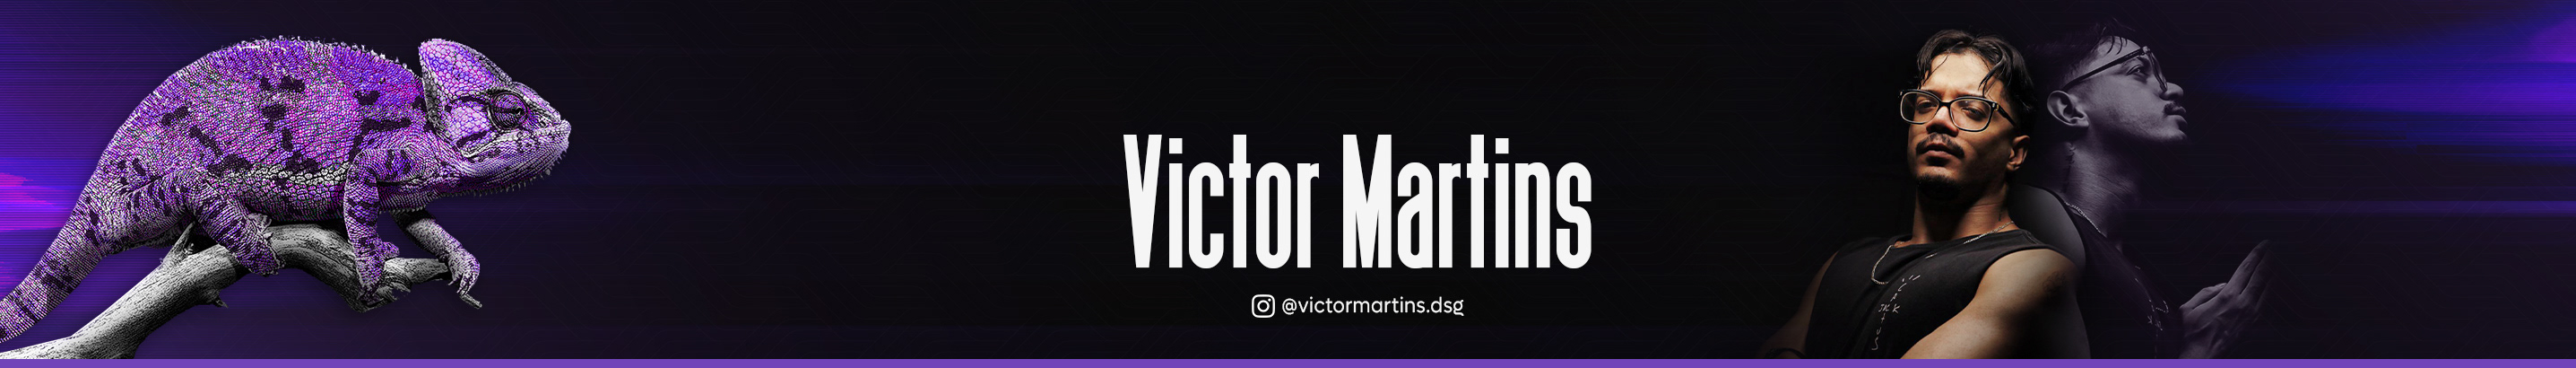 Banner de perfil de Victor Martins